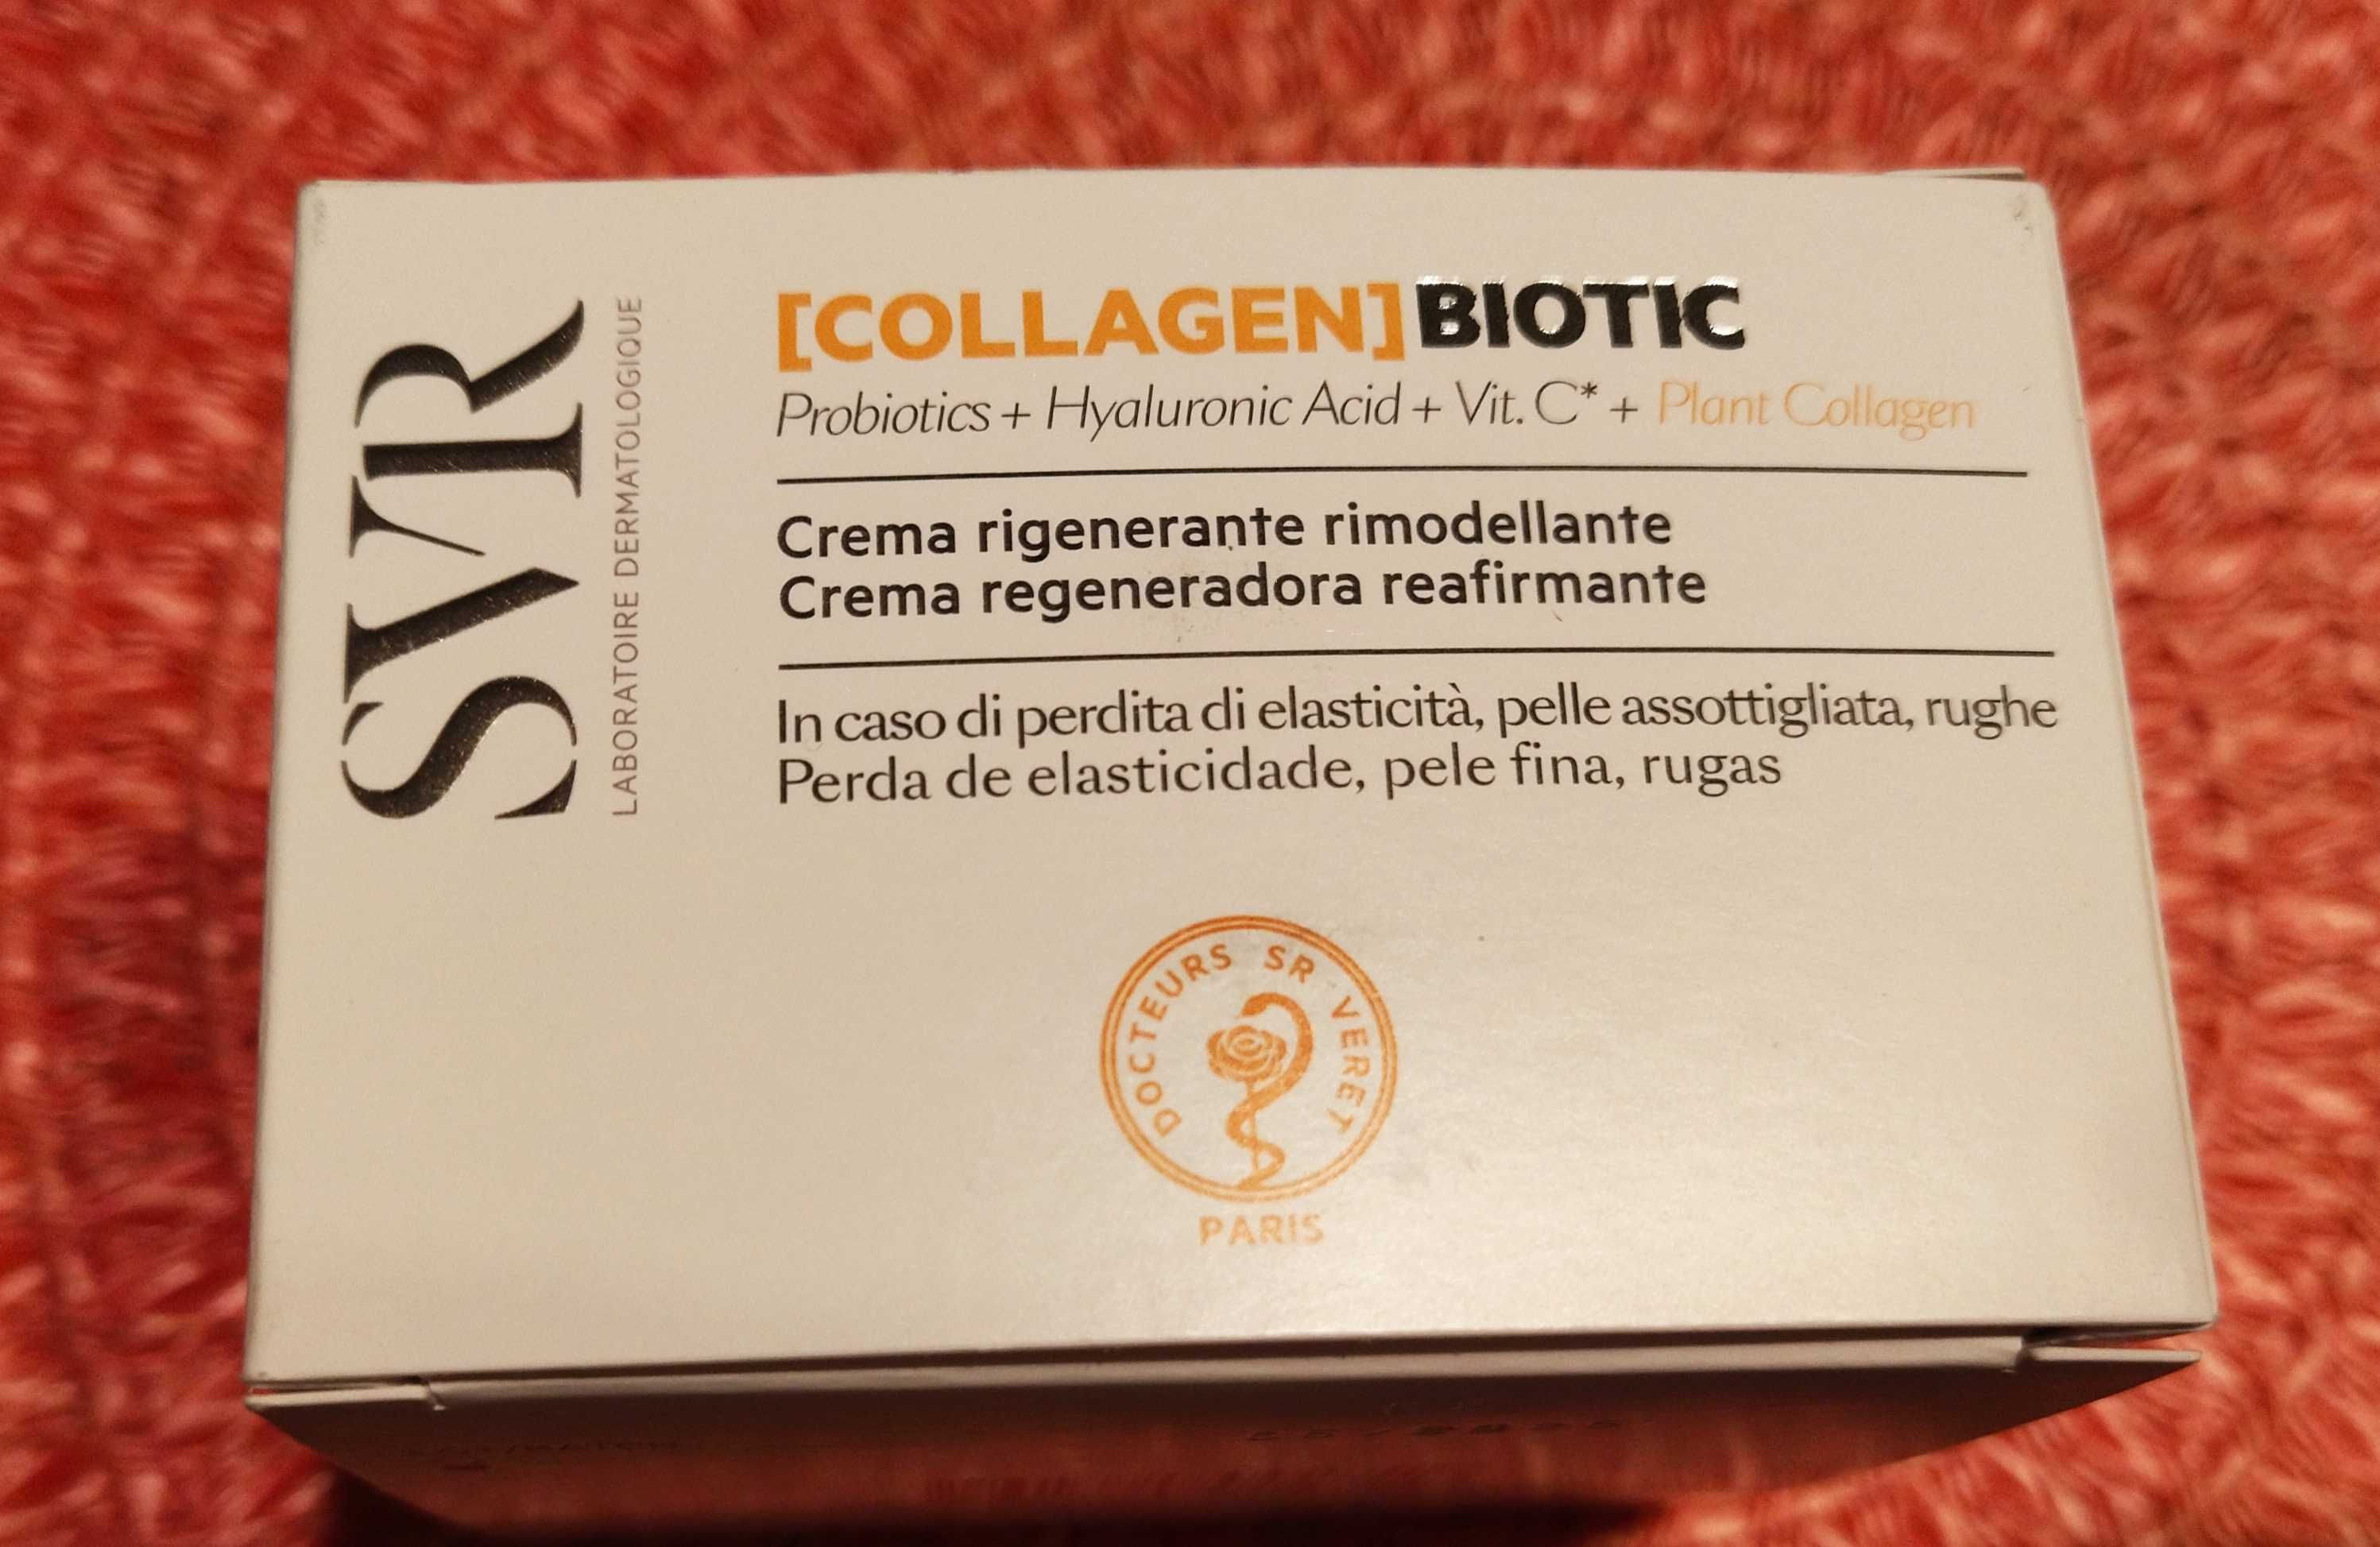 COLLAGEN] Biotic
Regenerujący krem przywracający skórze sprężystość